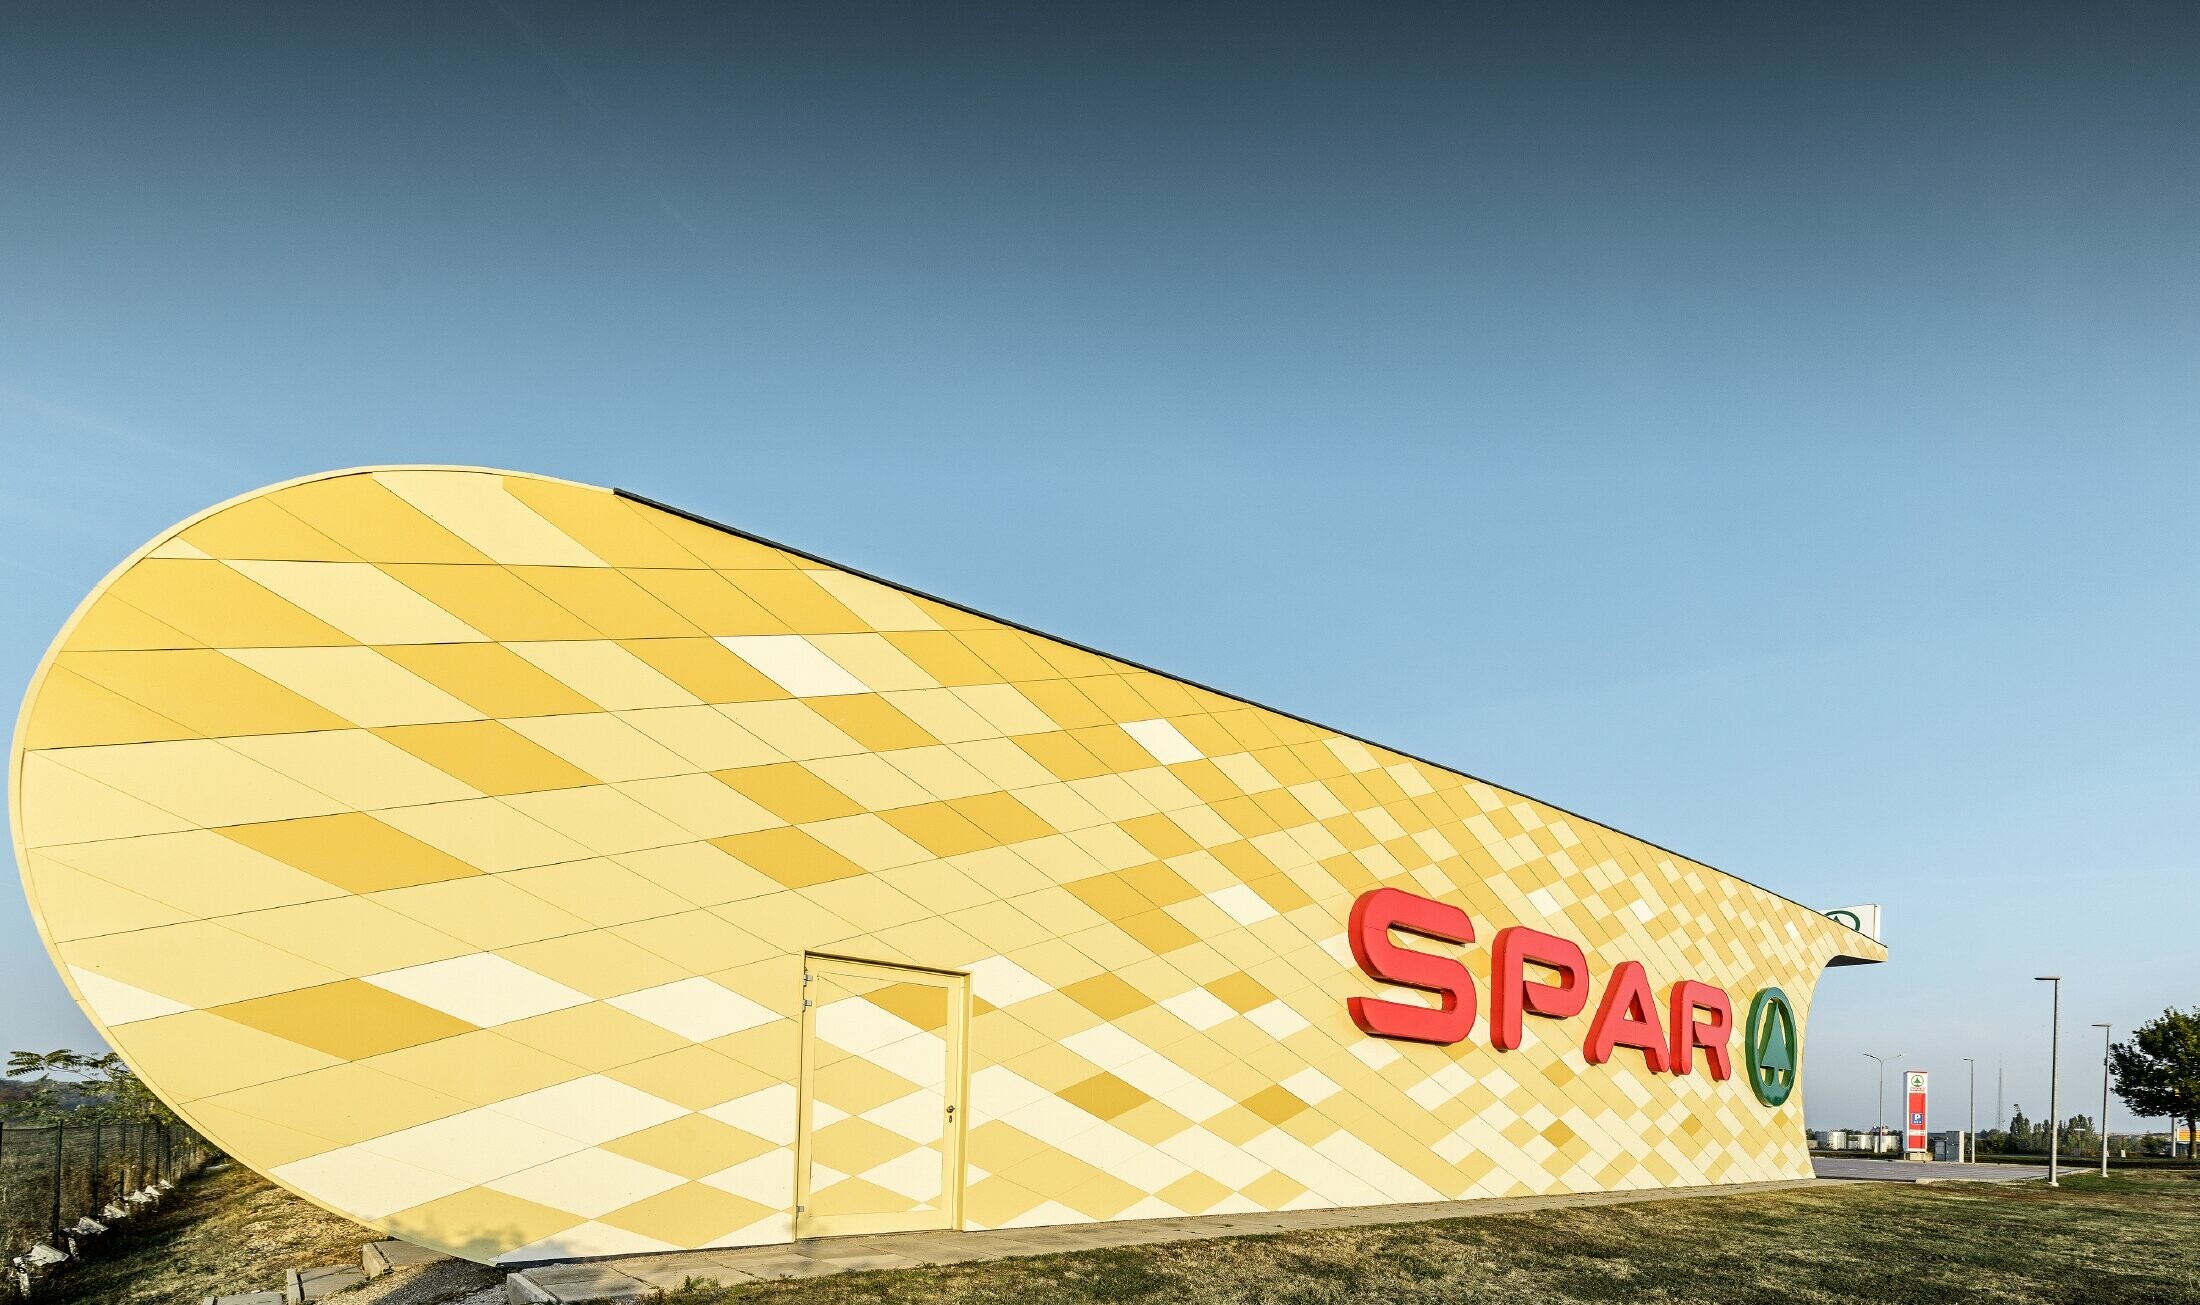 Spar-filial med en rutmönstrad aluminiumfasad i gulorange och Spar-logo